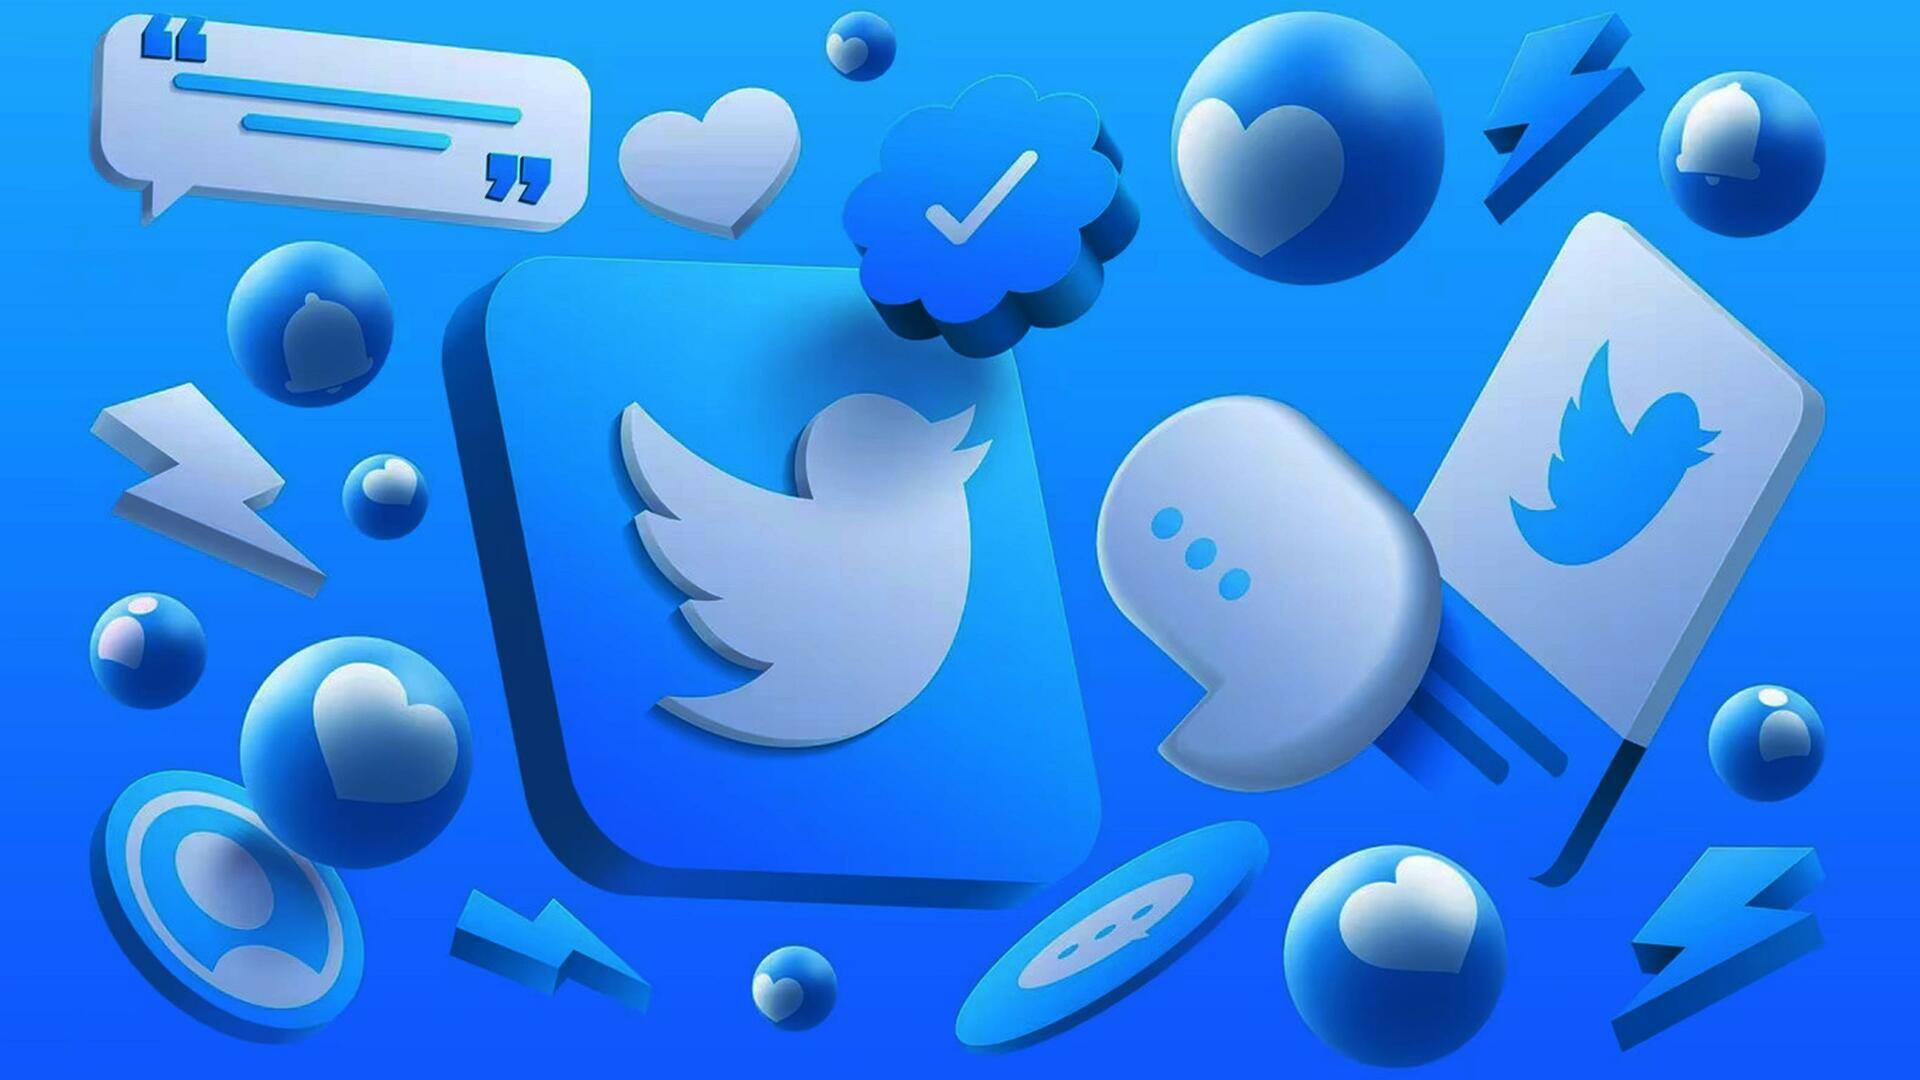 ट्विटर के टू-फैक्टर ऑथेंटिकेशन के लिए अब देना होगा चार्ज, ब्लू सब्सक्राइबर को मिलती रहेगी सुविधा